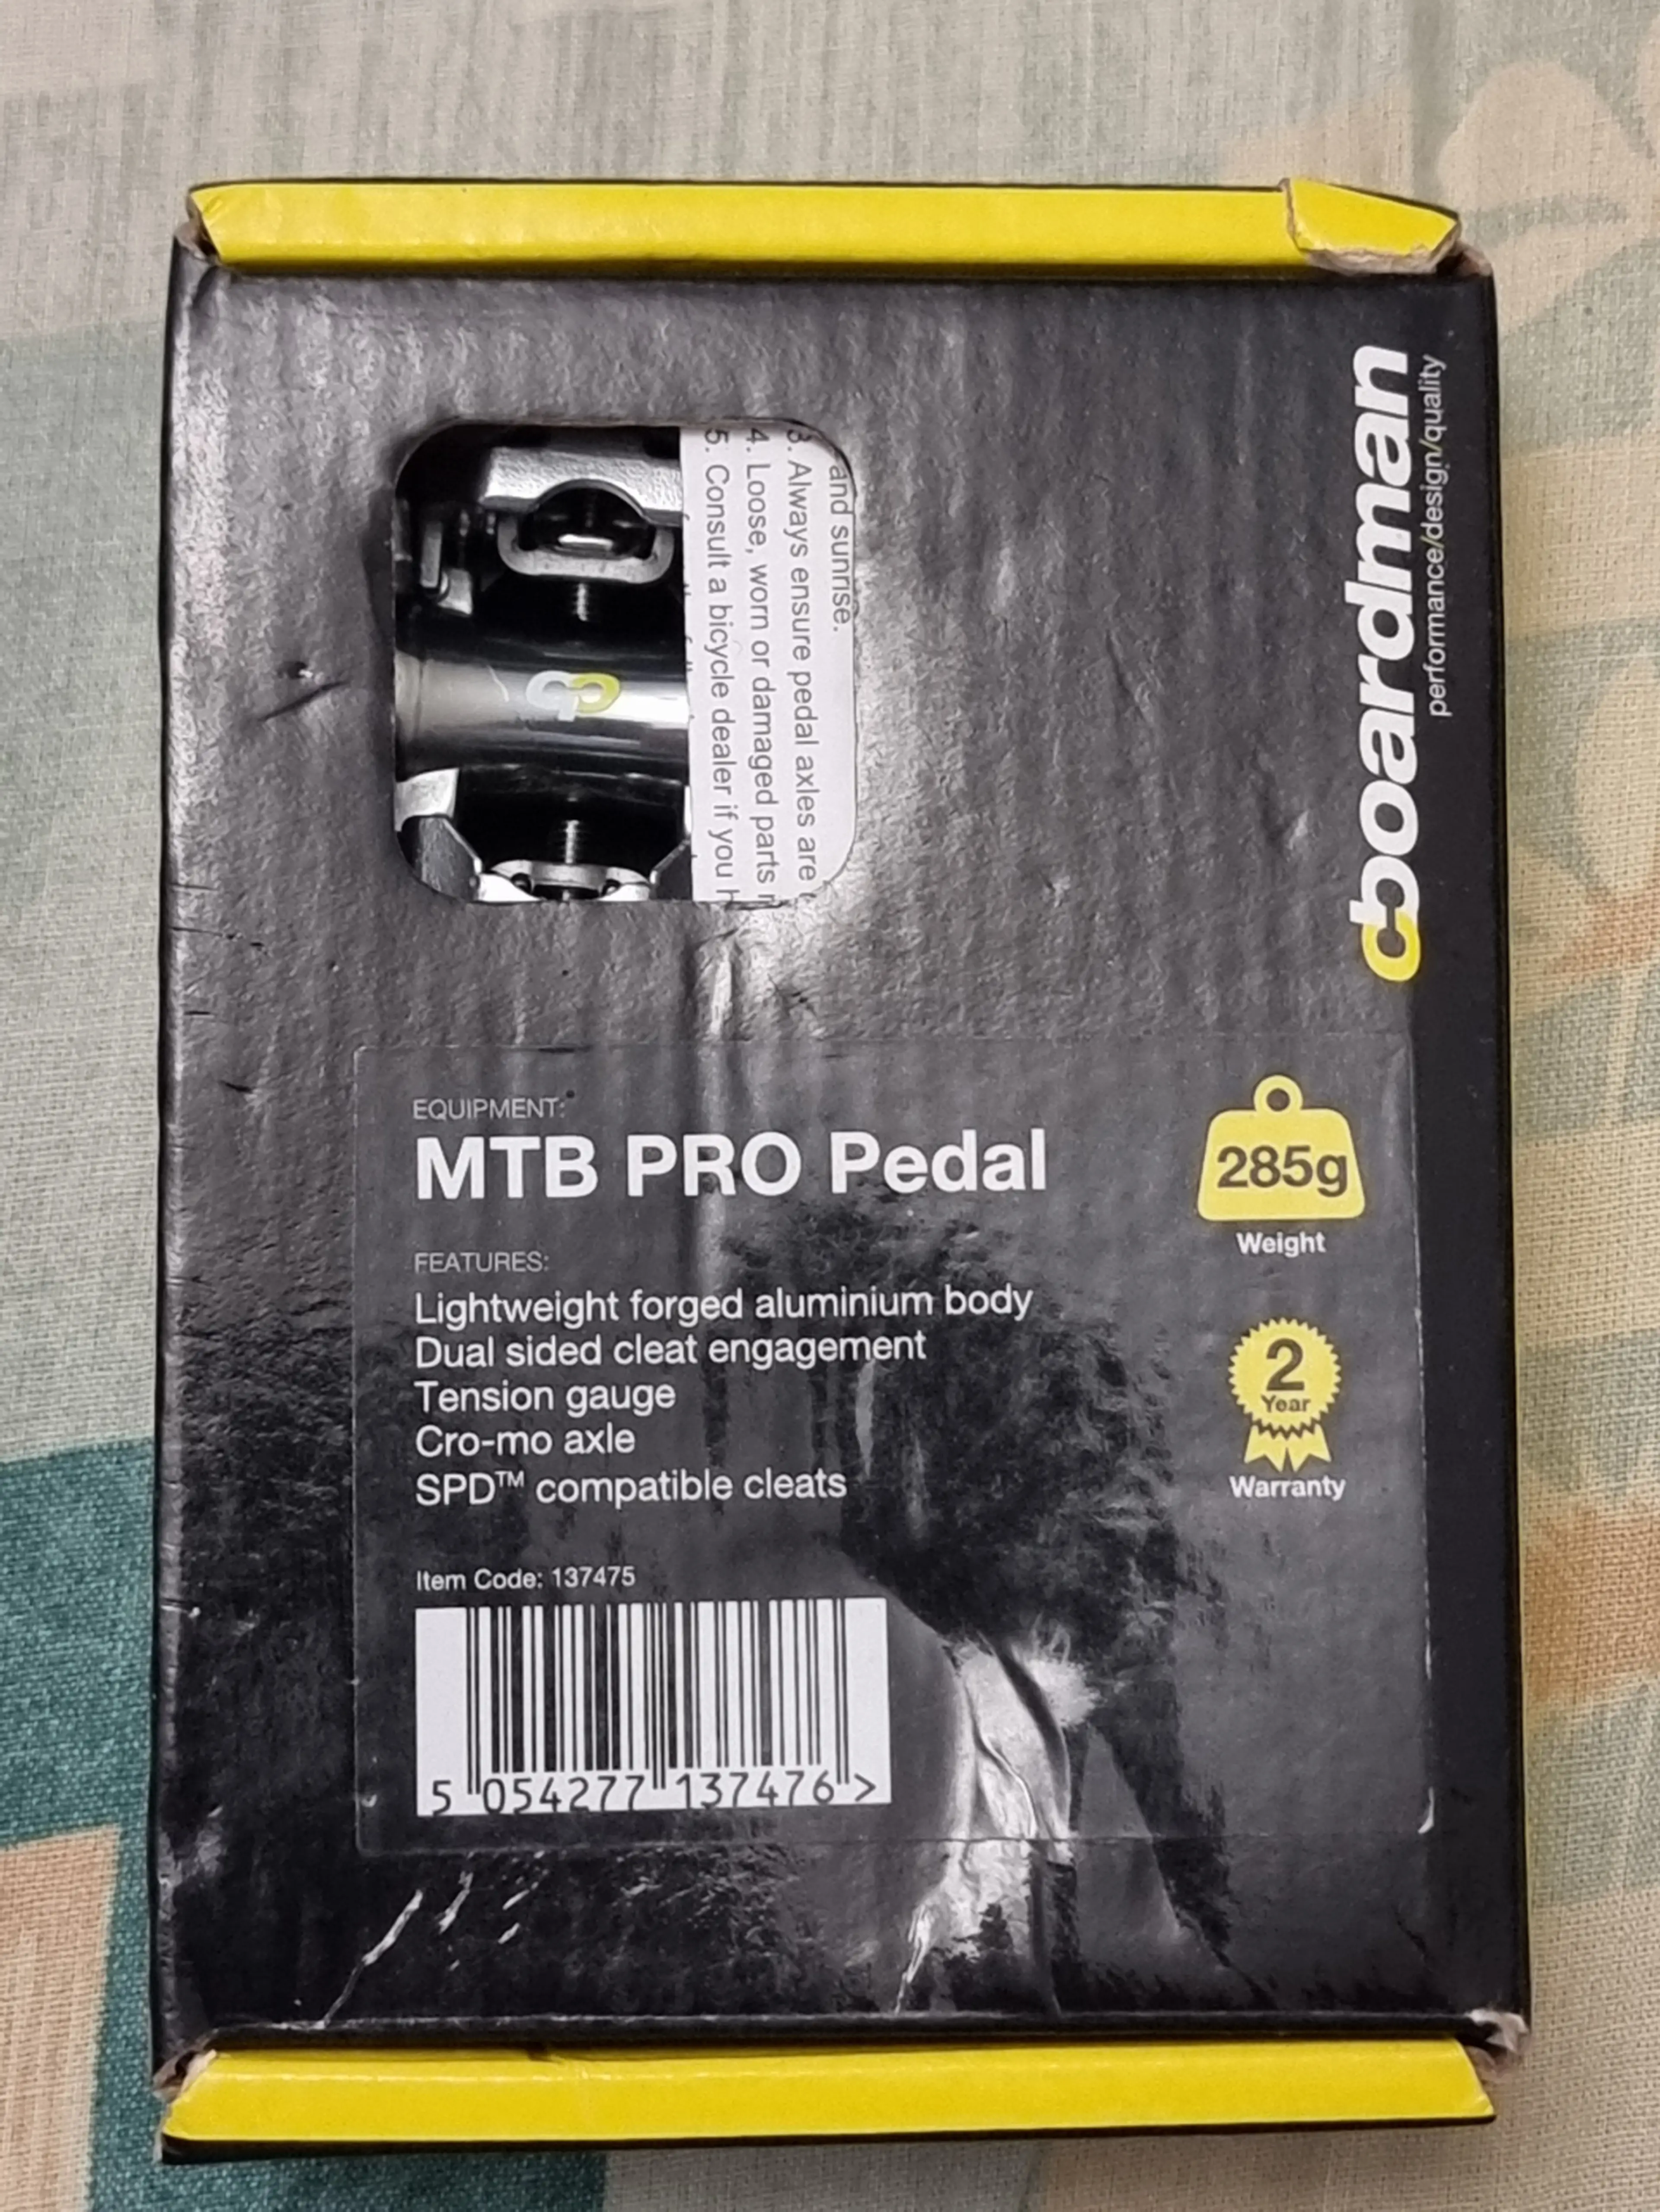 5. Pedale Boardman MTB Pro Pedal